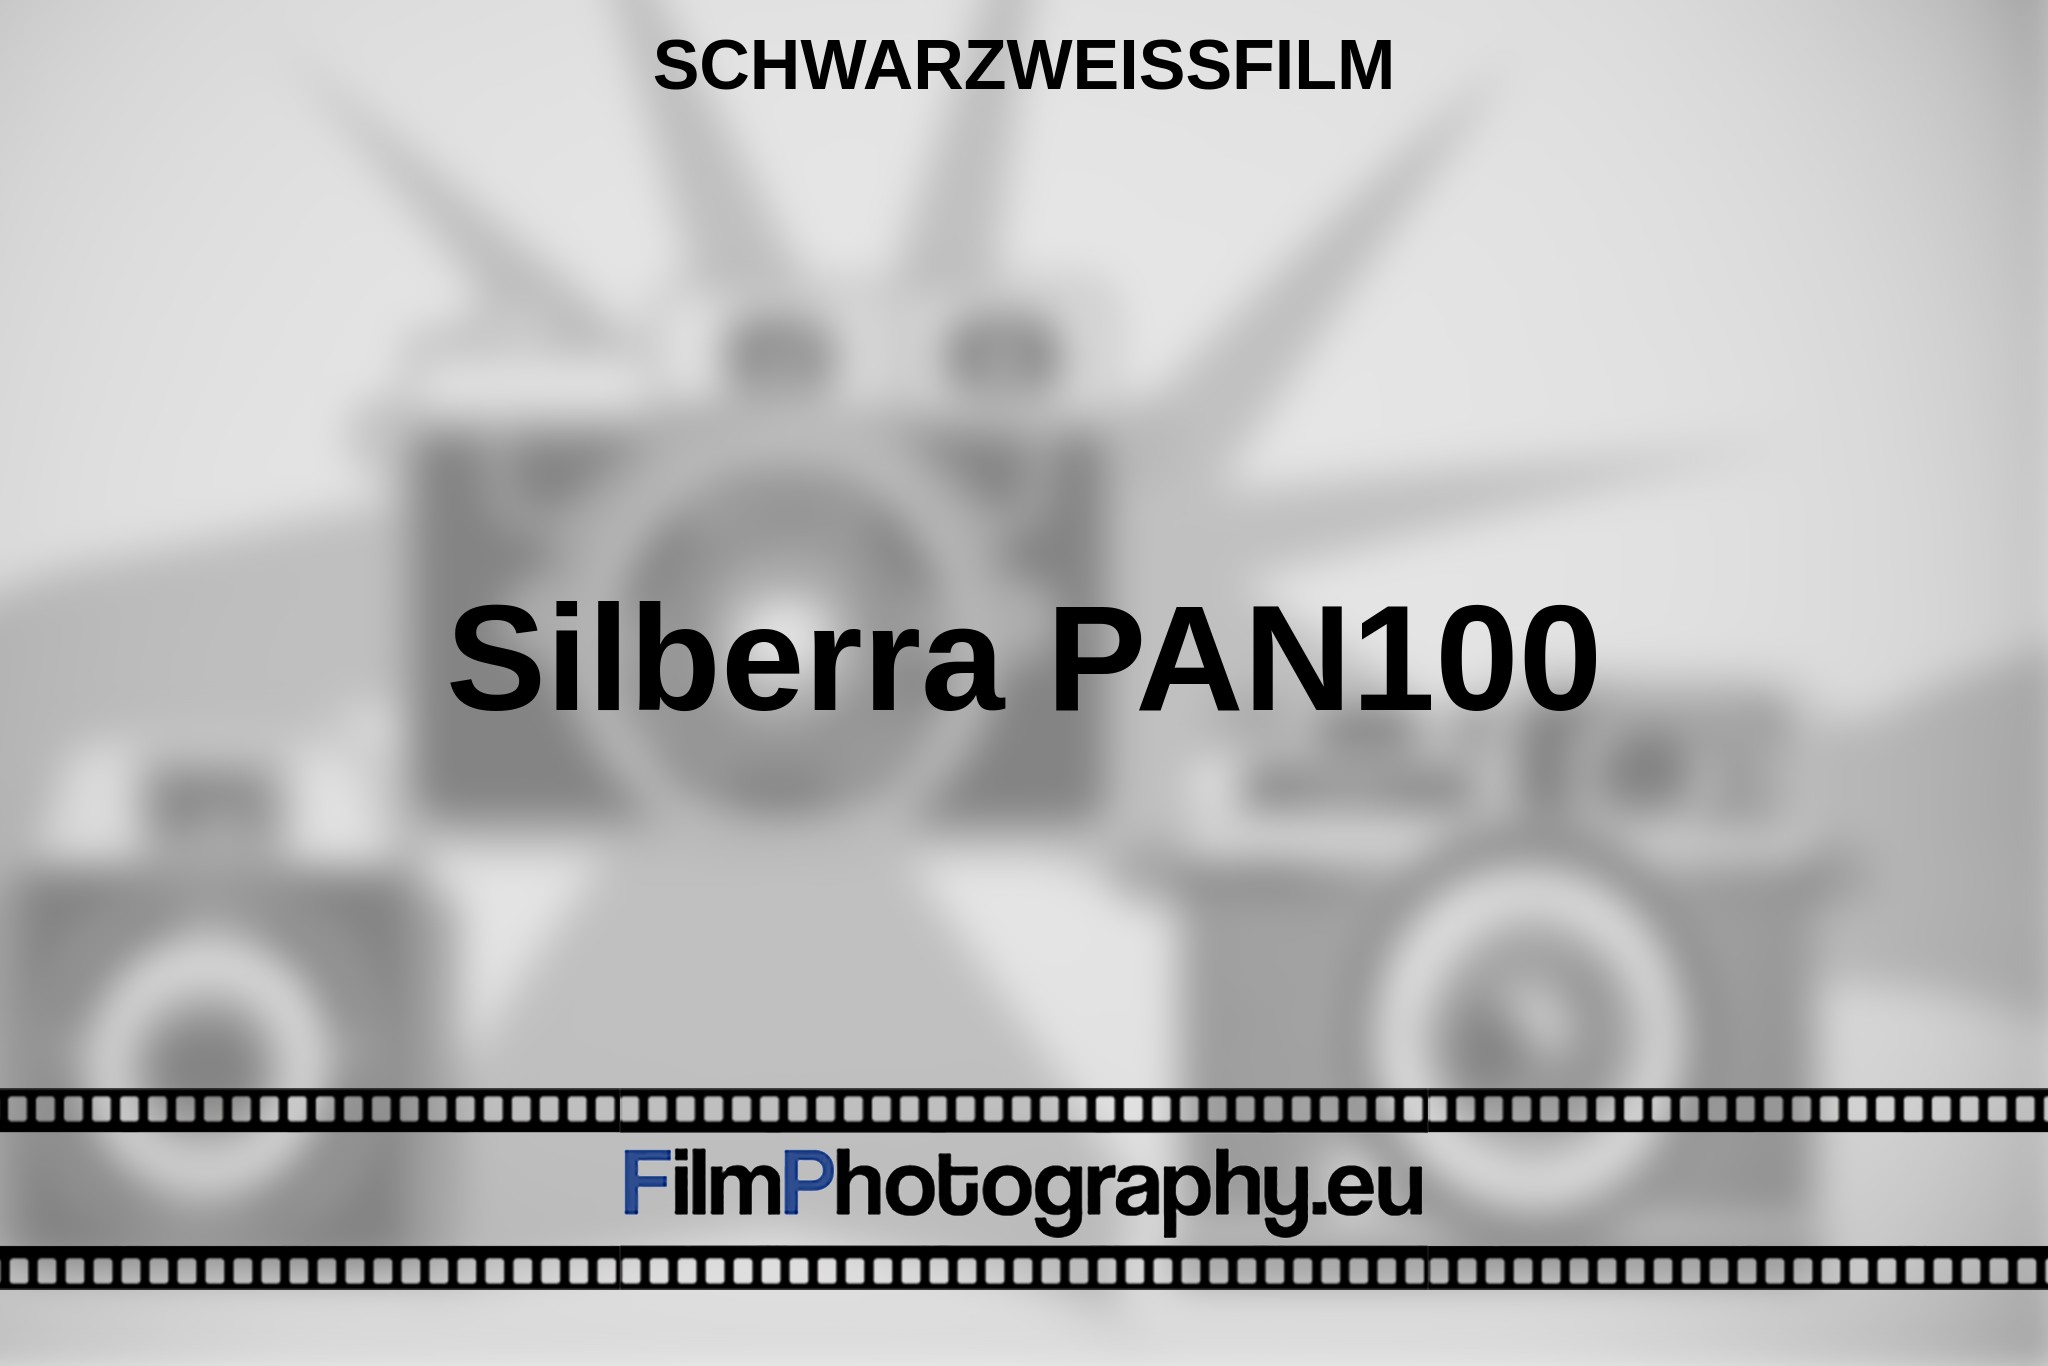 silberra-pan100-schwarzweißfilm-bnv.jpg